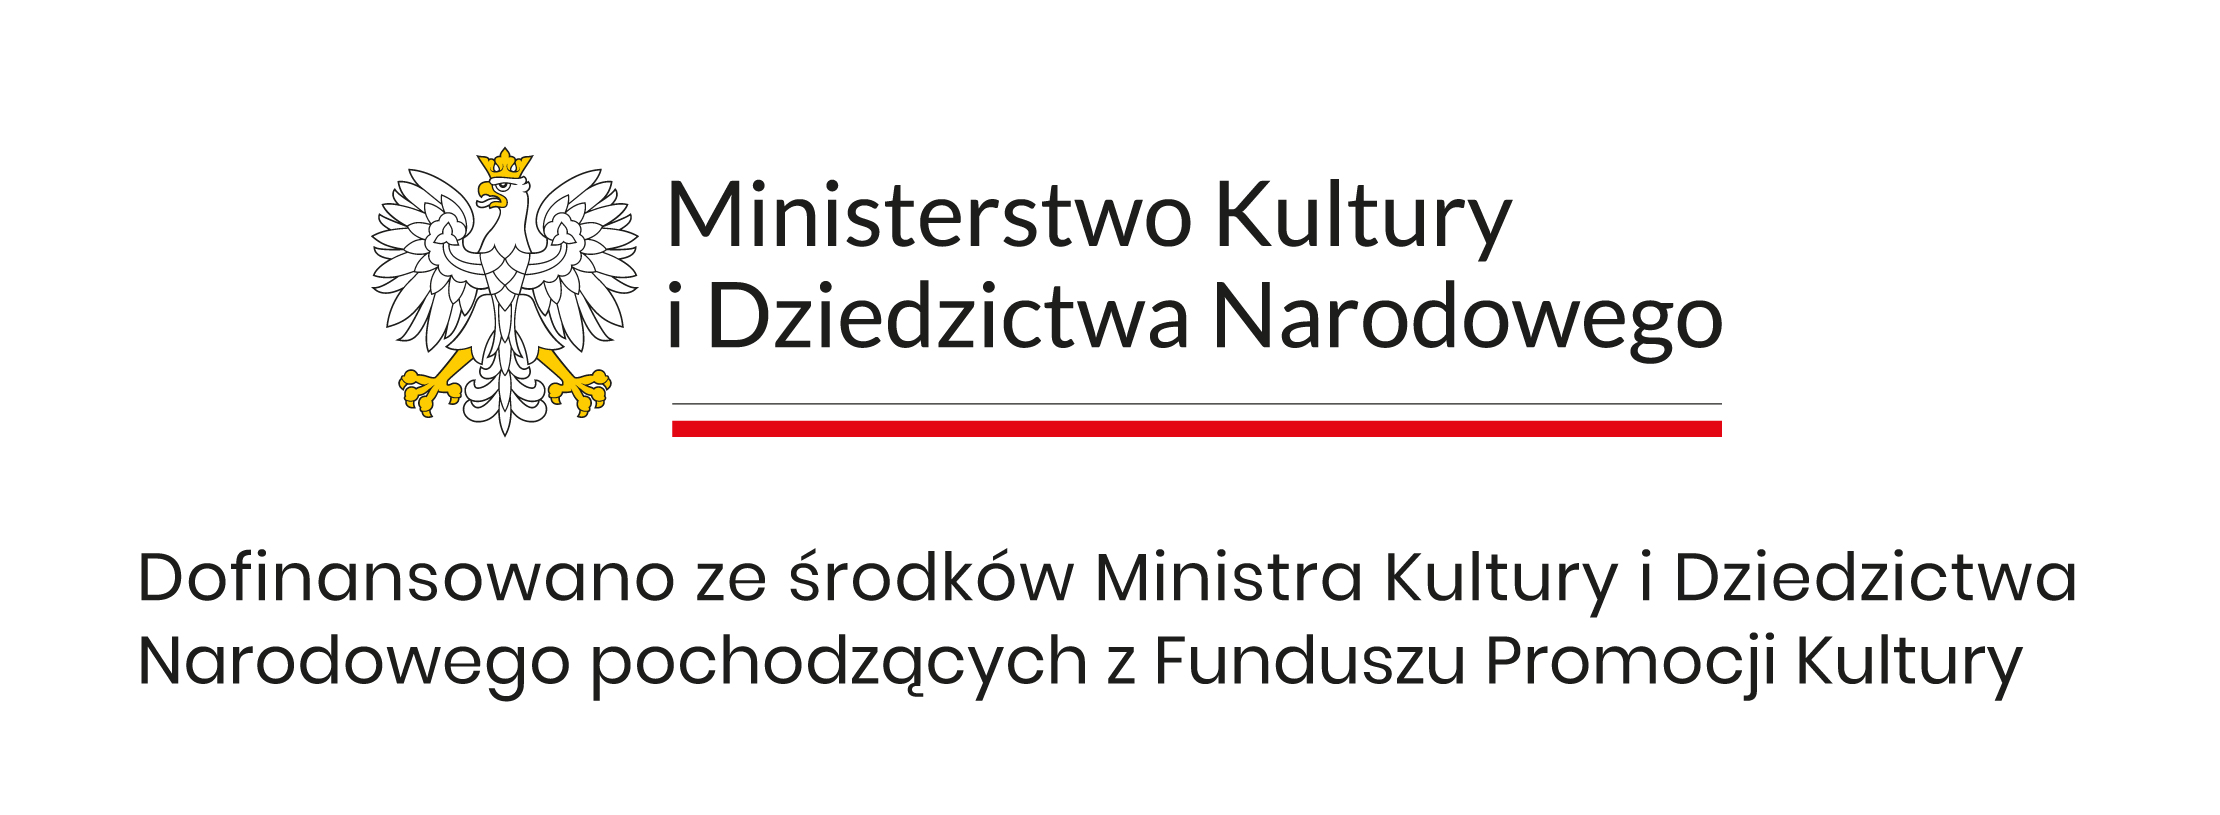 mkidn Dofinansowano ze środków Ministra Kultury i Dziedzictwa Narodowego pochodzących z Funduszu Promocji Kultury